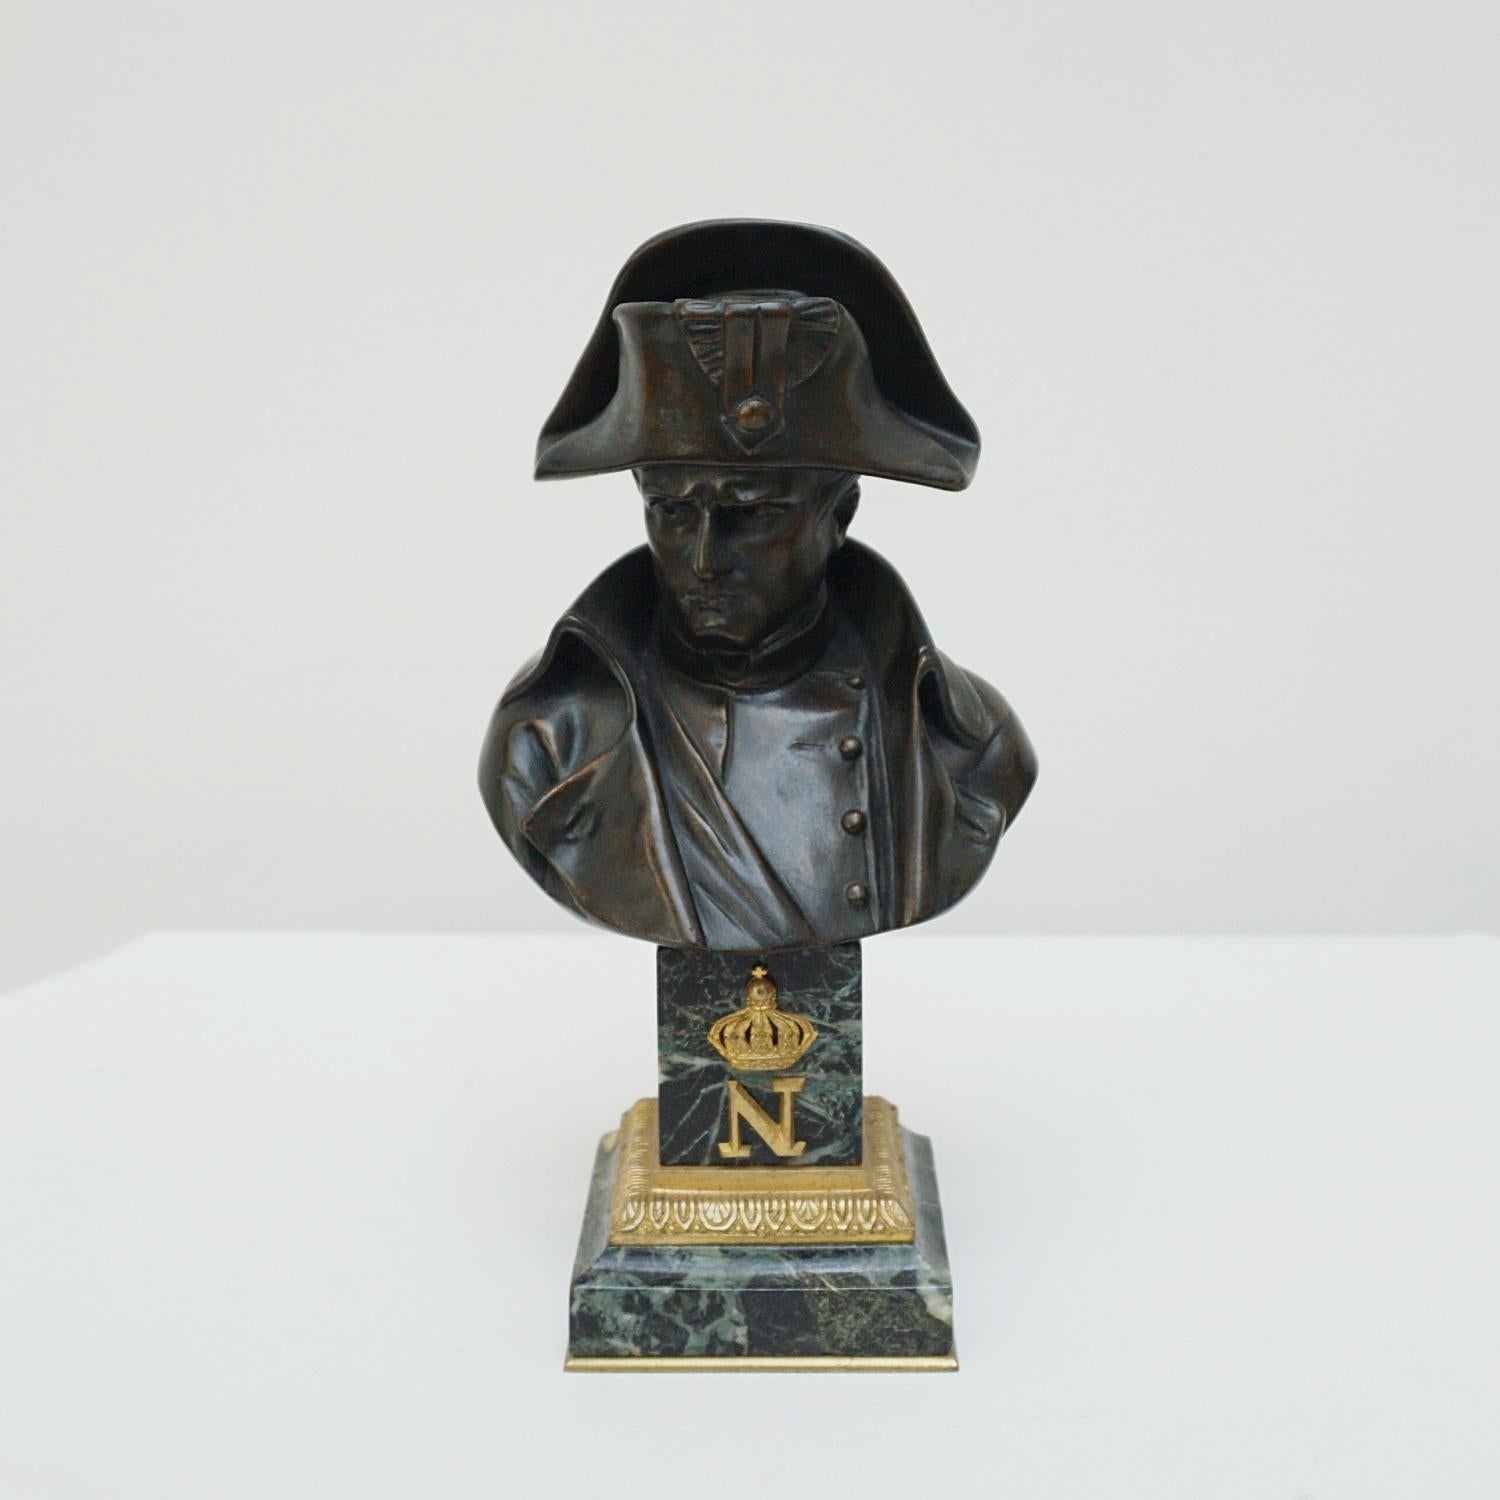 Buste en bronze du XIXe siècle de Napoléon Bonaparte par Emile Pinédo (1840 -1916). Le tout reposant sur une base en marbre à gradins. Signé 